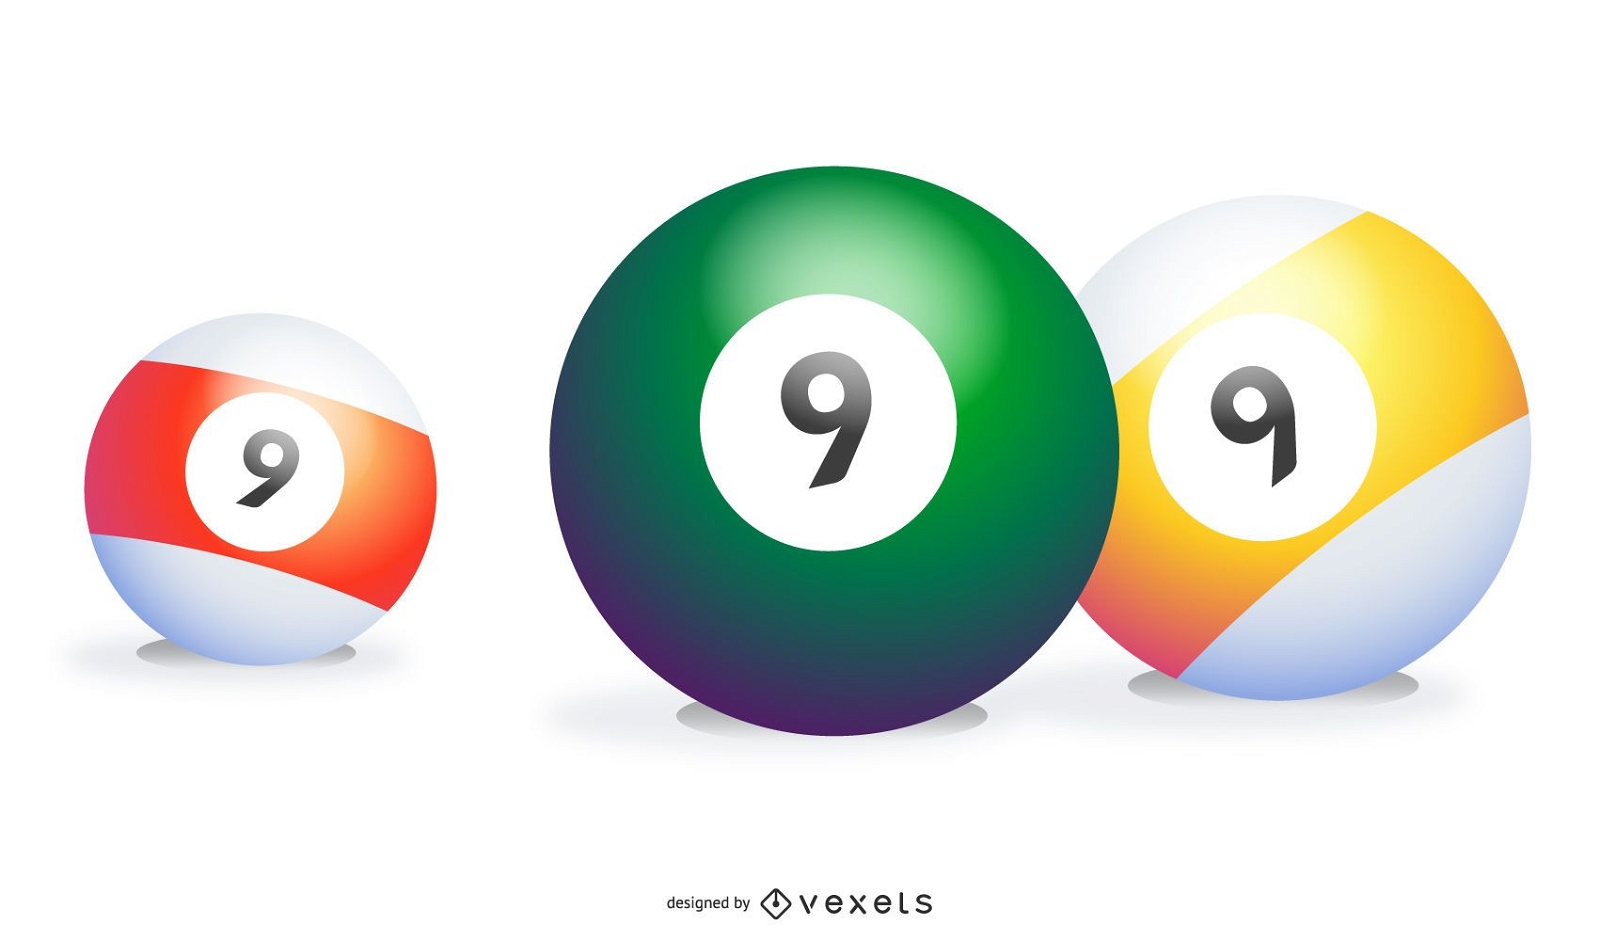 Tres 9 bolas en diferentes colores